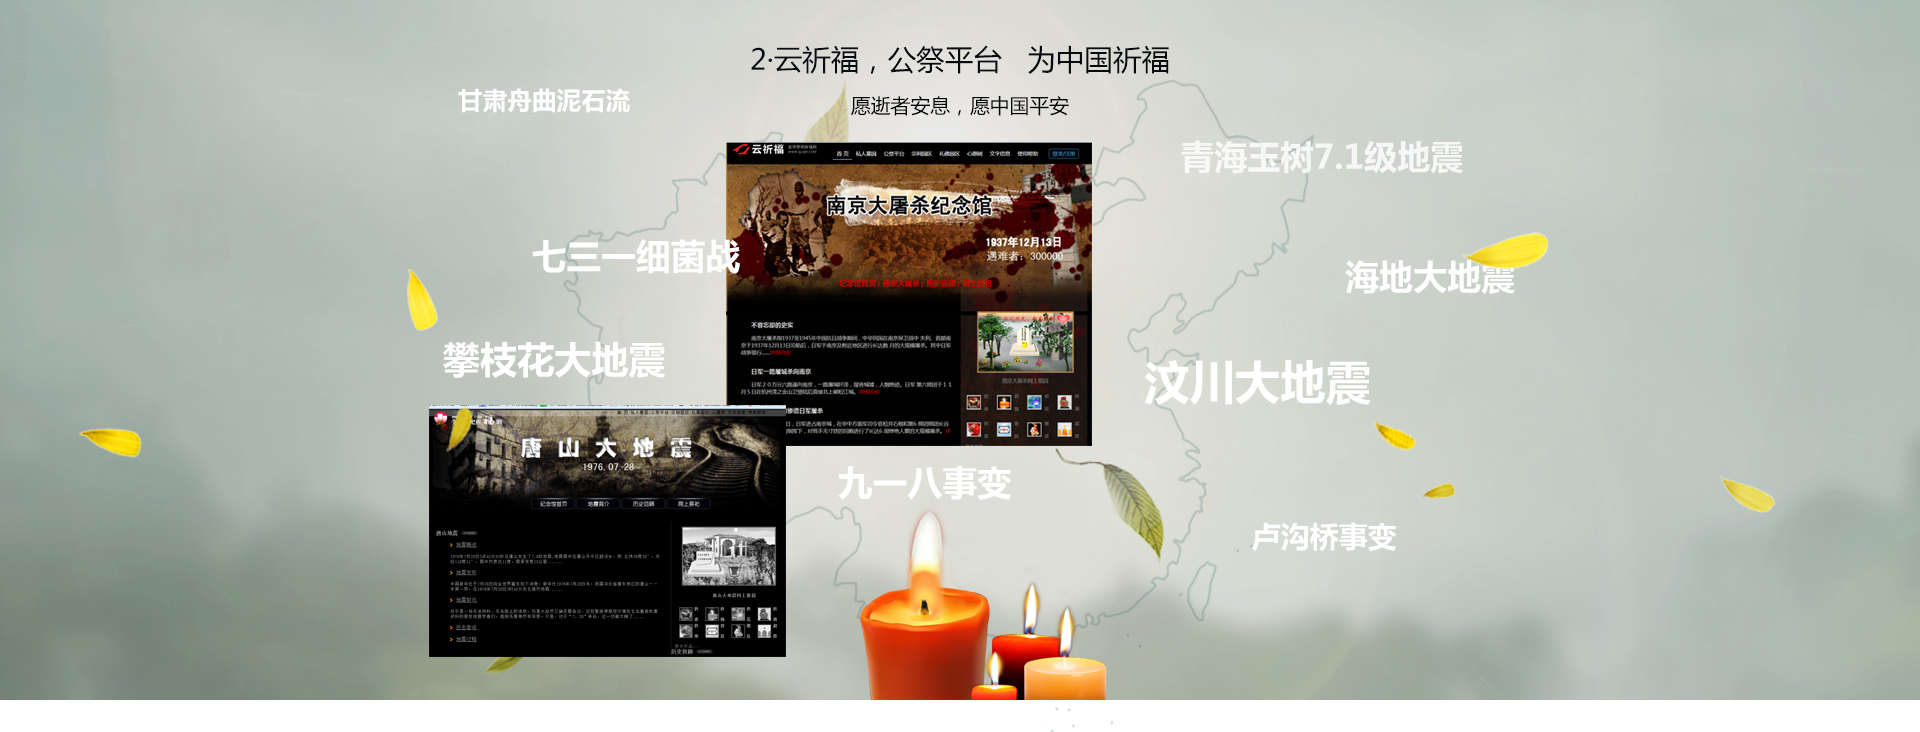 云祈福公祭平台，南京大屠杀照片，512大地震感人事迹